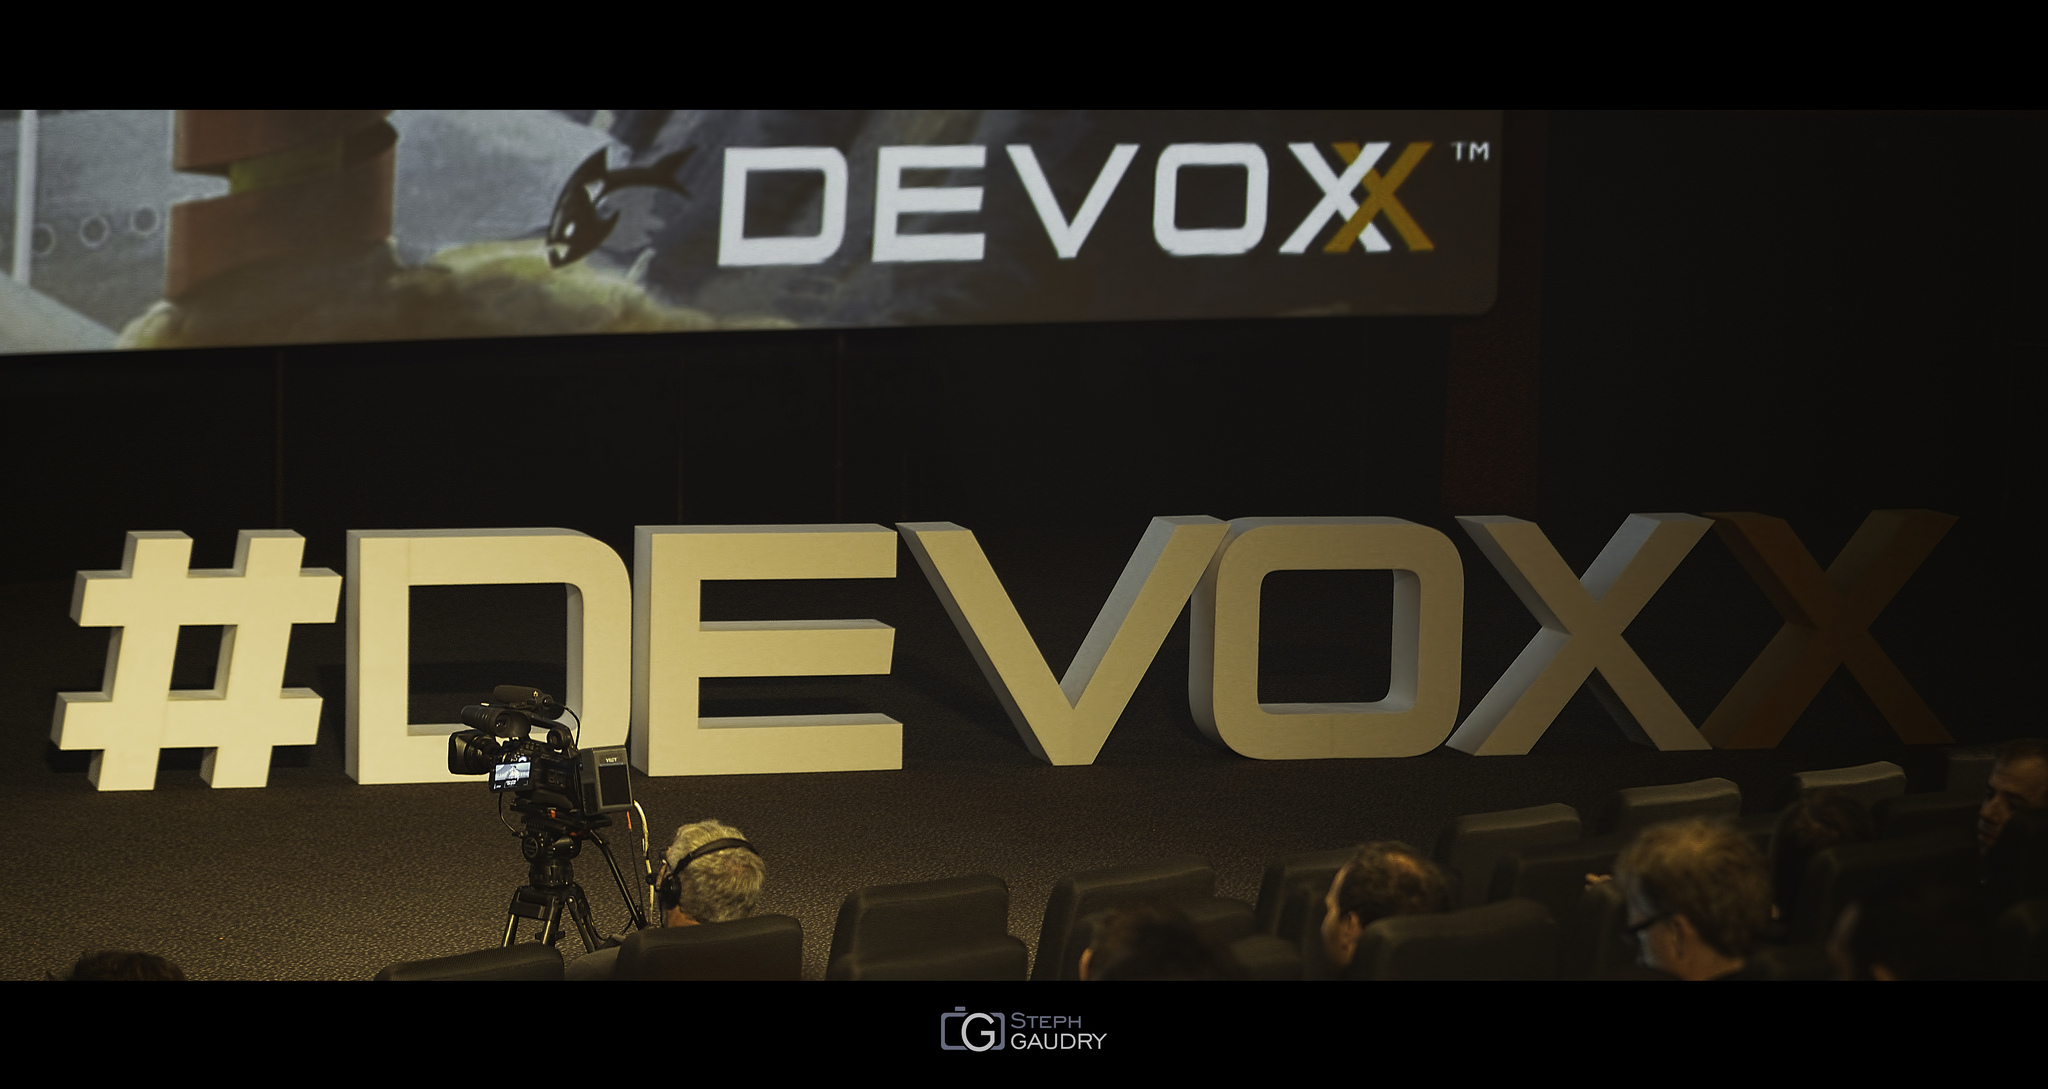 Devoxx 2015 [Click to start slideshow]